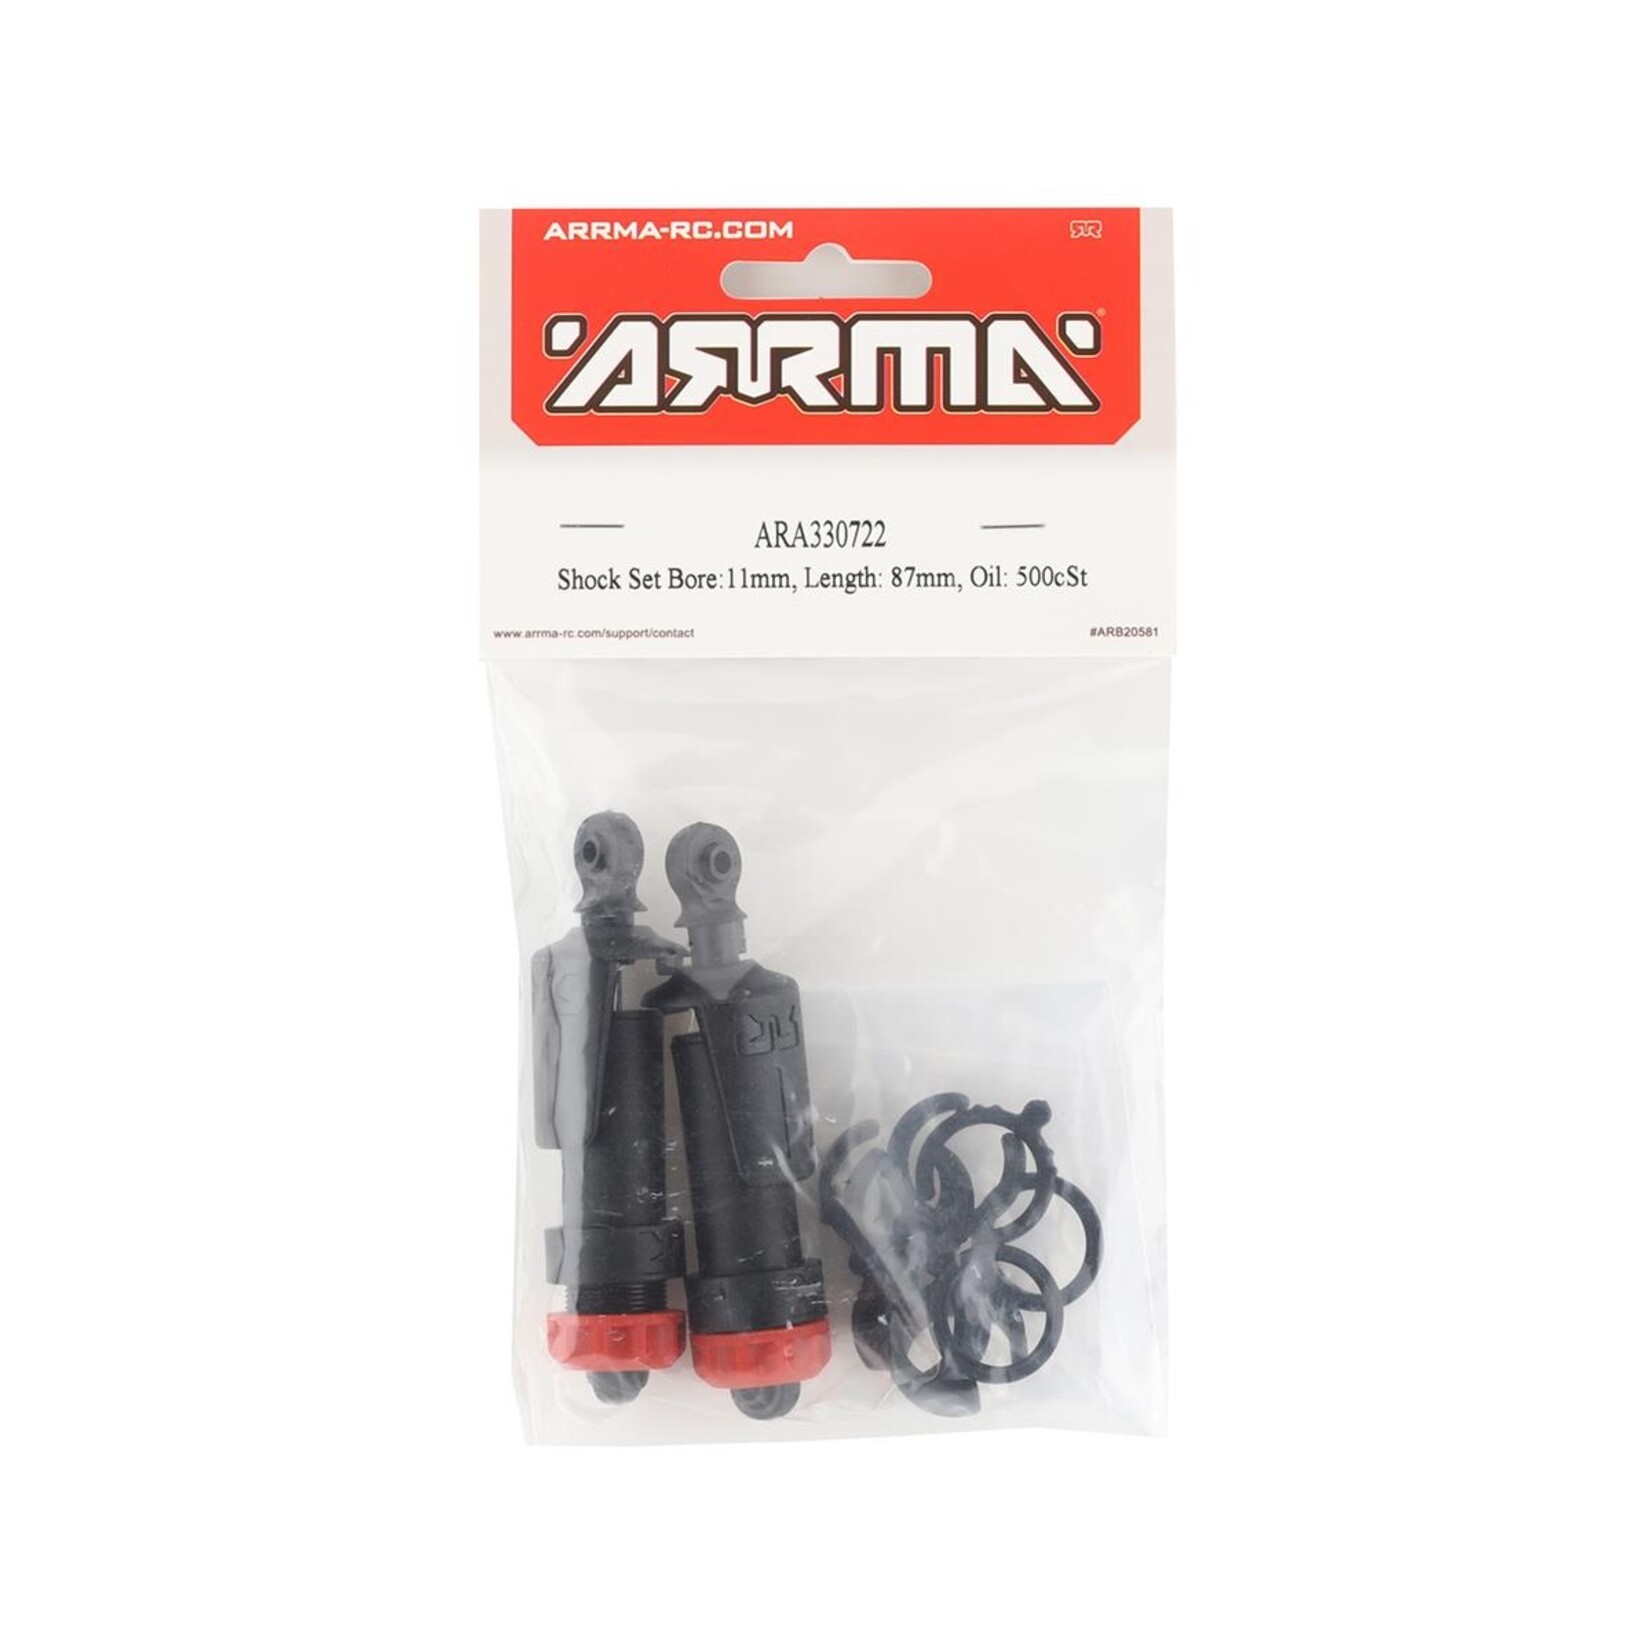 ARRMA Arrma Vorteks 3S BLX Front Shock Set (2) (87mm) #ARA330722